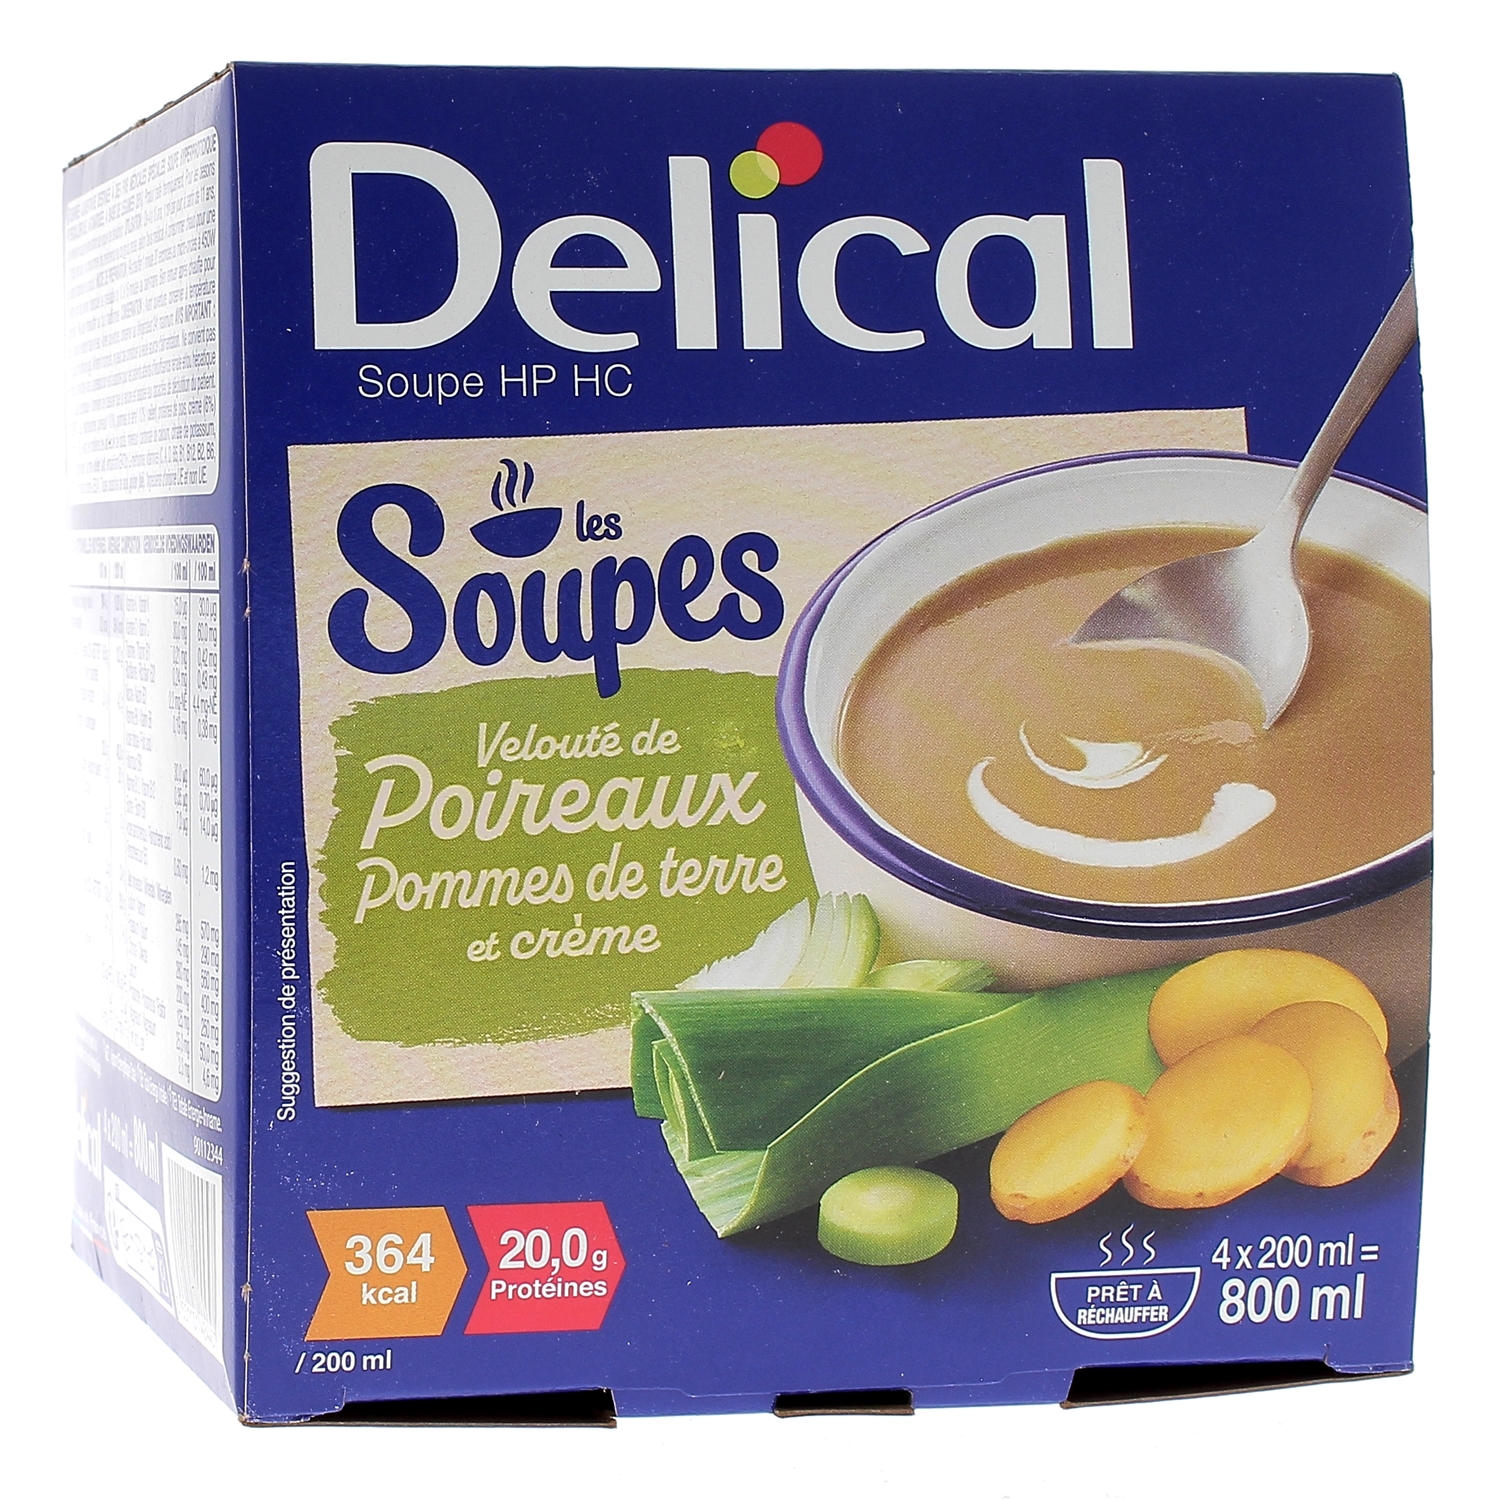 Delical Soupe HP/HC Velouté de poireaux, pommes de terre et crème - 4 bols de 200ml